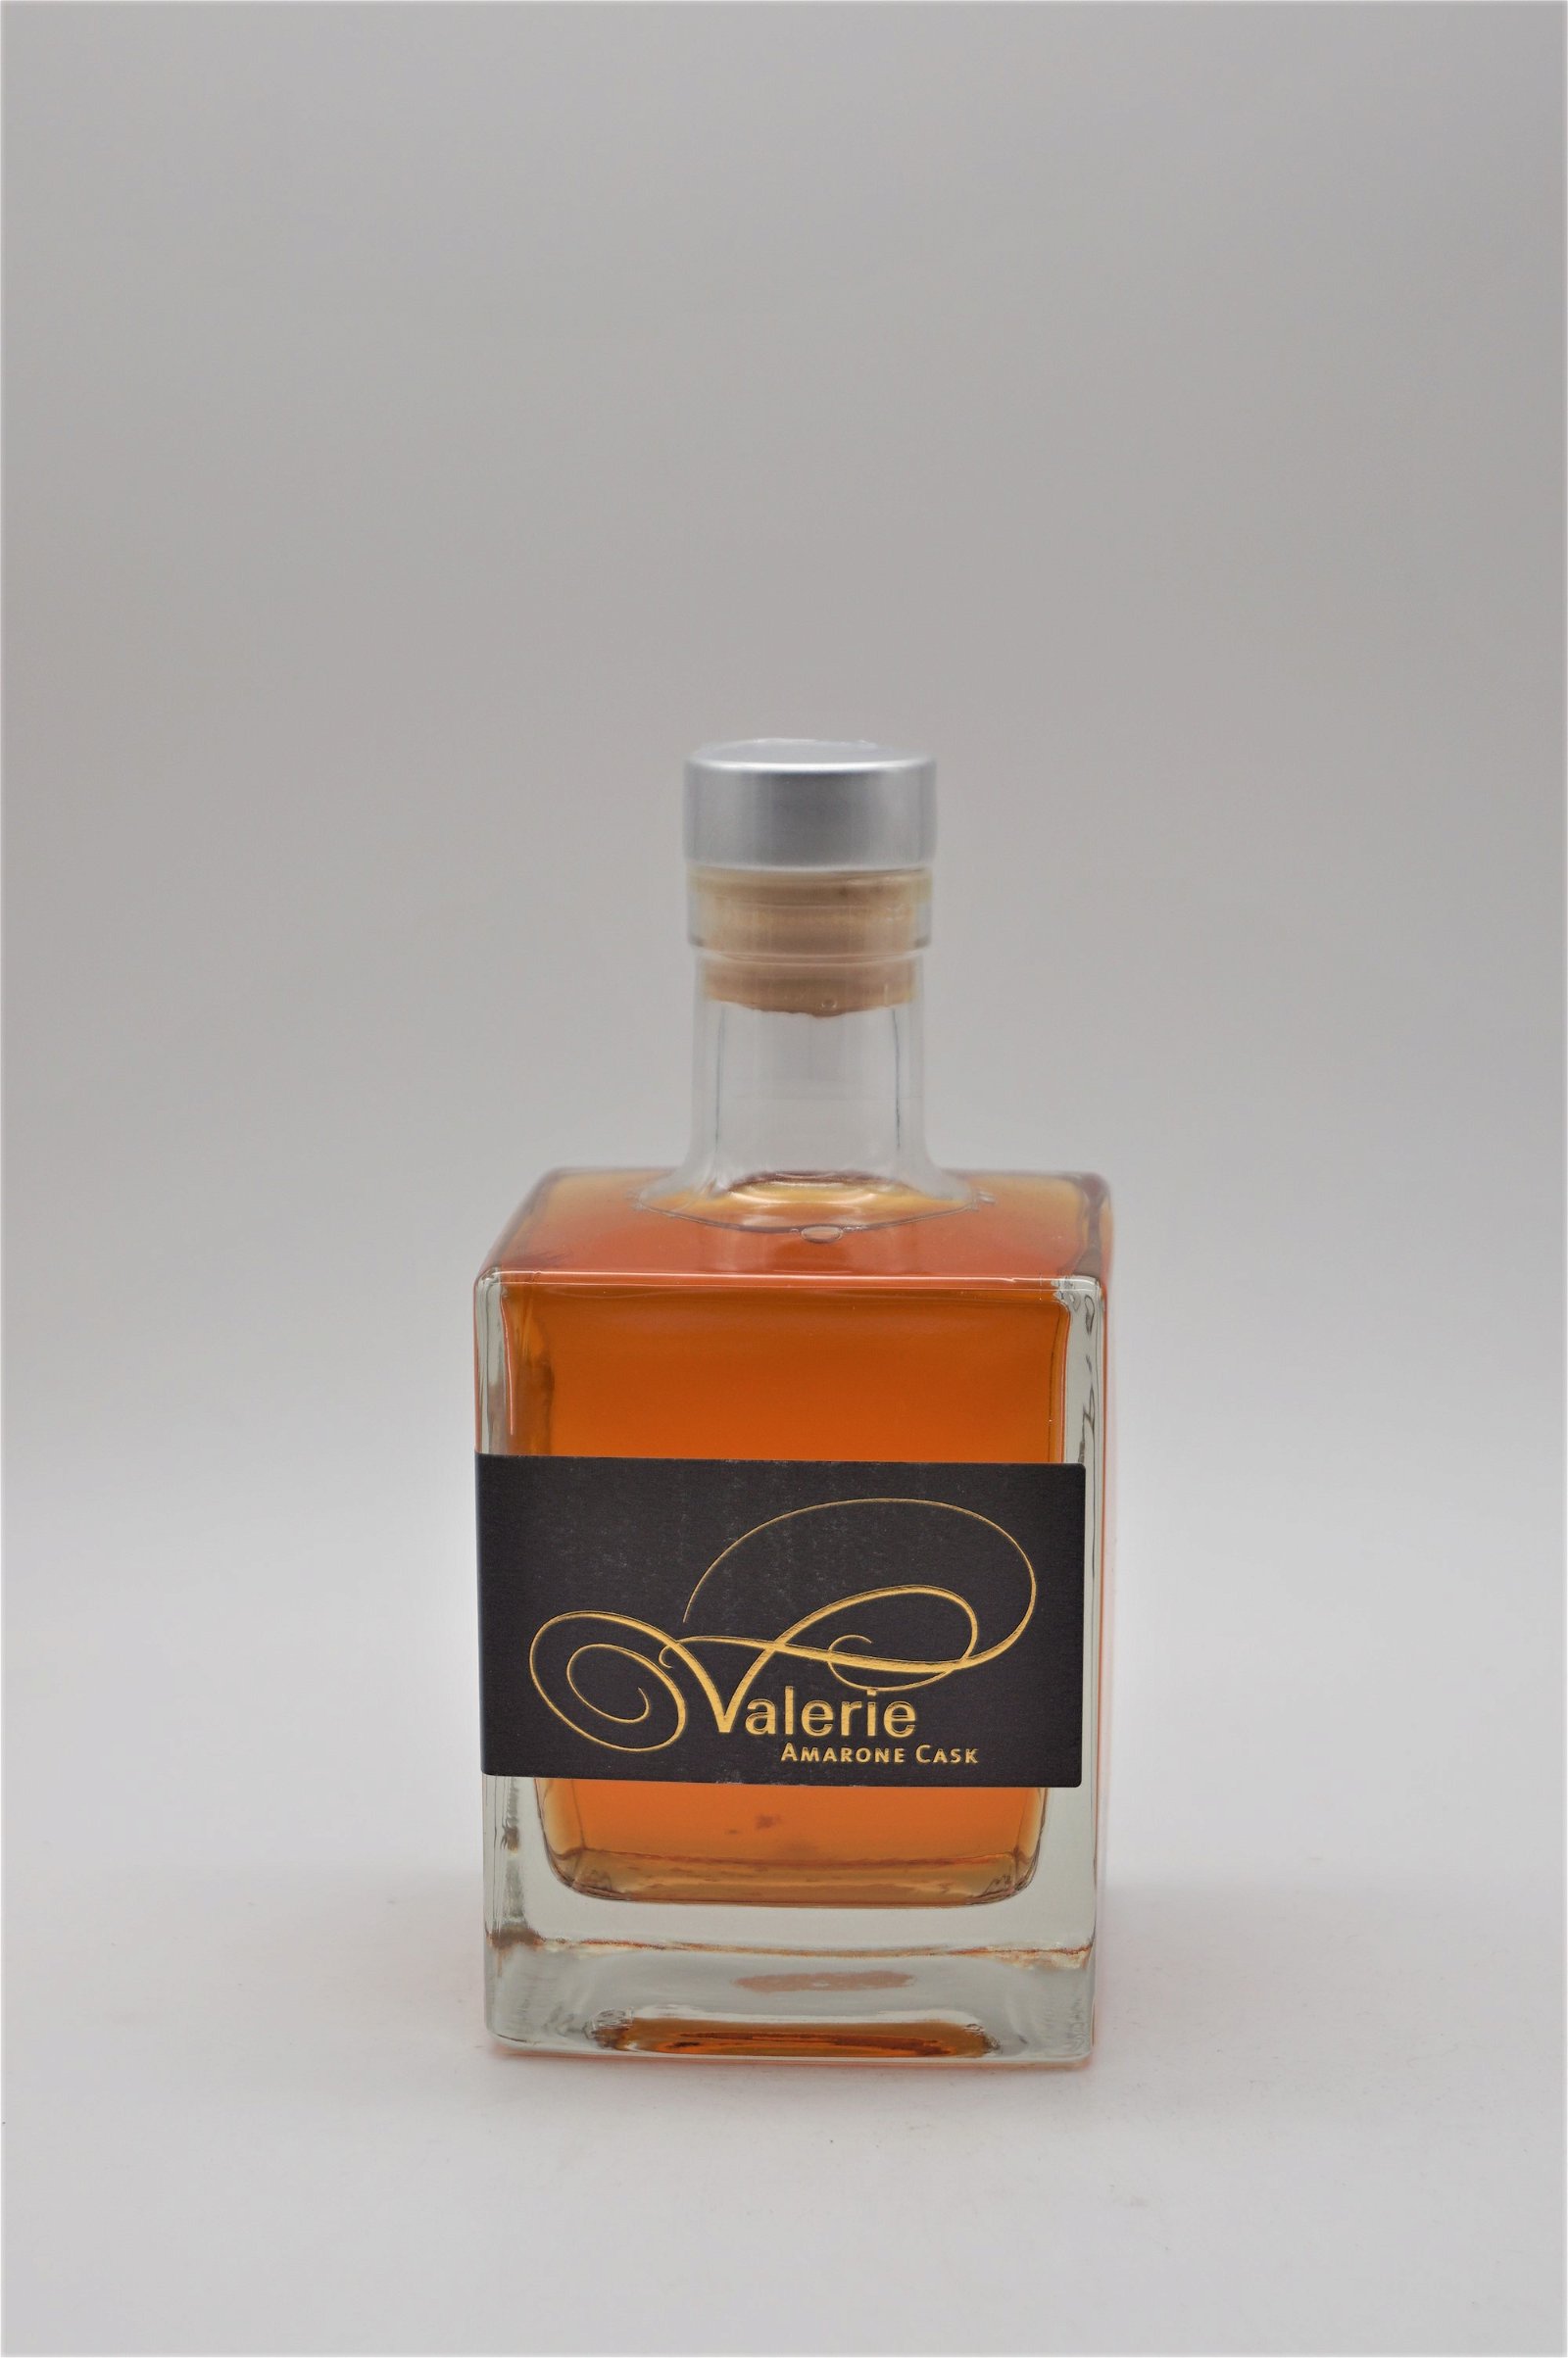 Feller Valerie Single Malt Whisky Amarone Cask